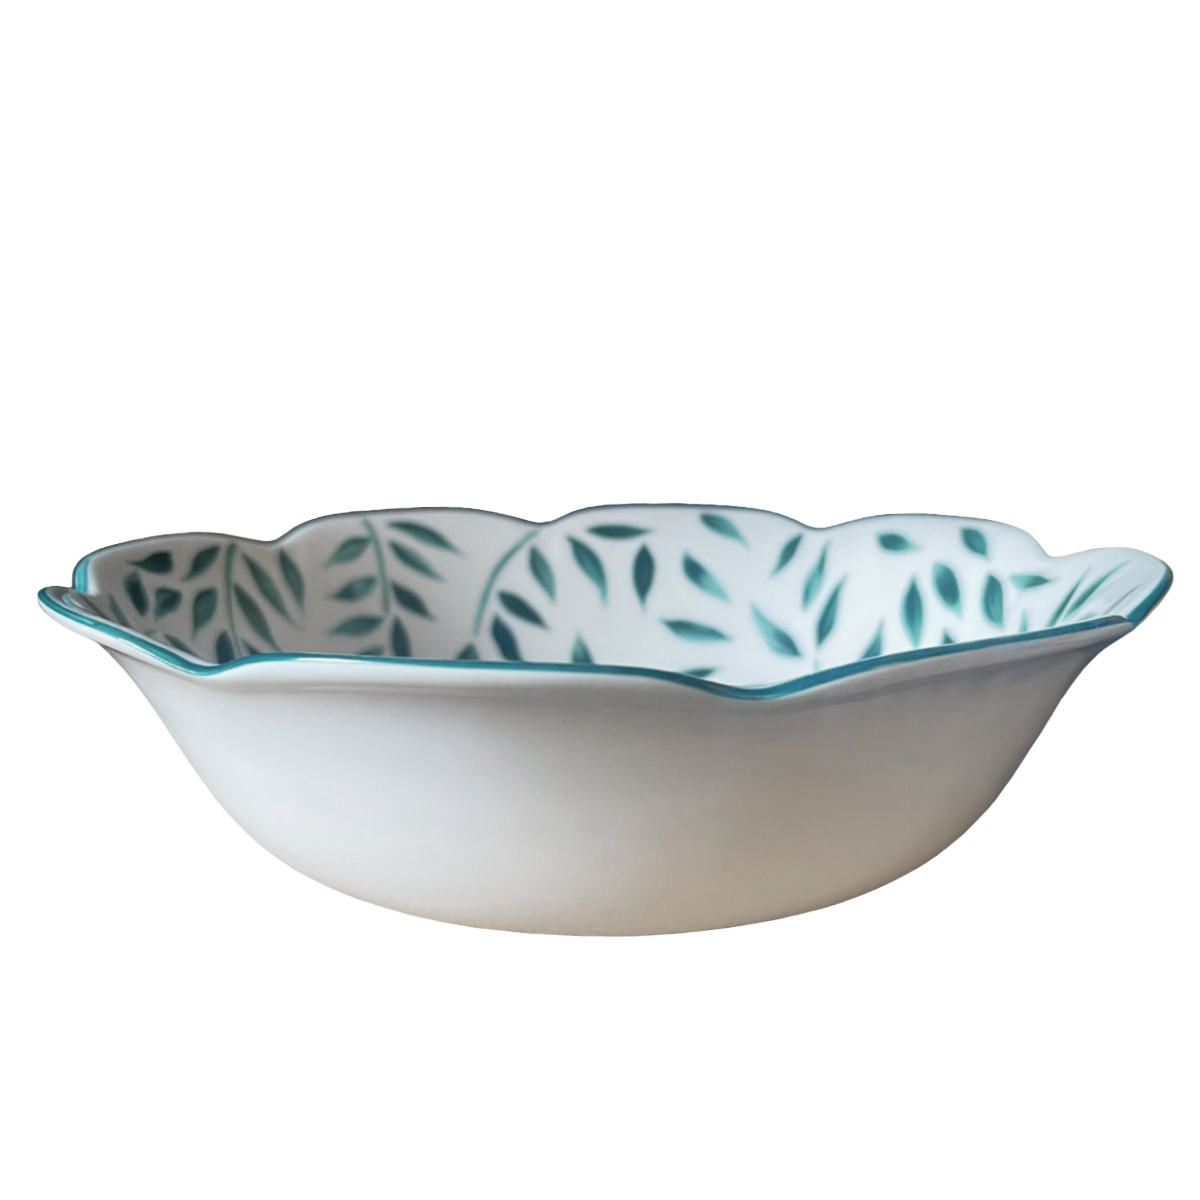 Olivier vert filet vert - Cereal soup bowl 18 cm